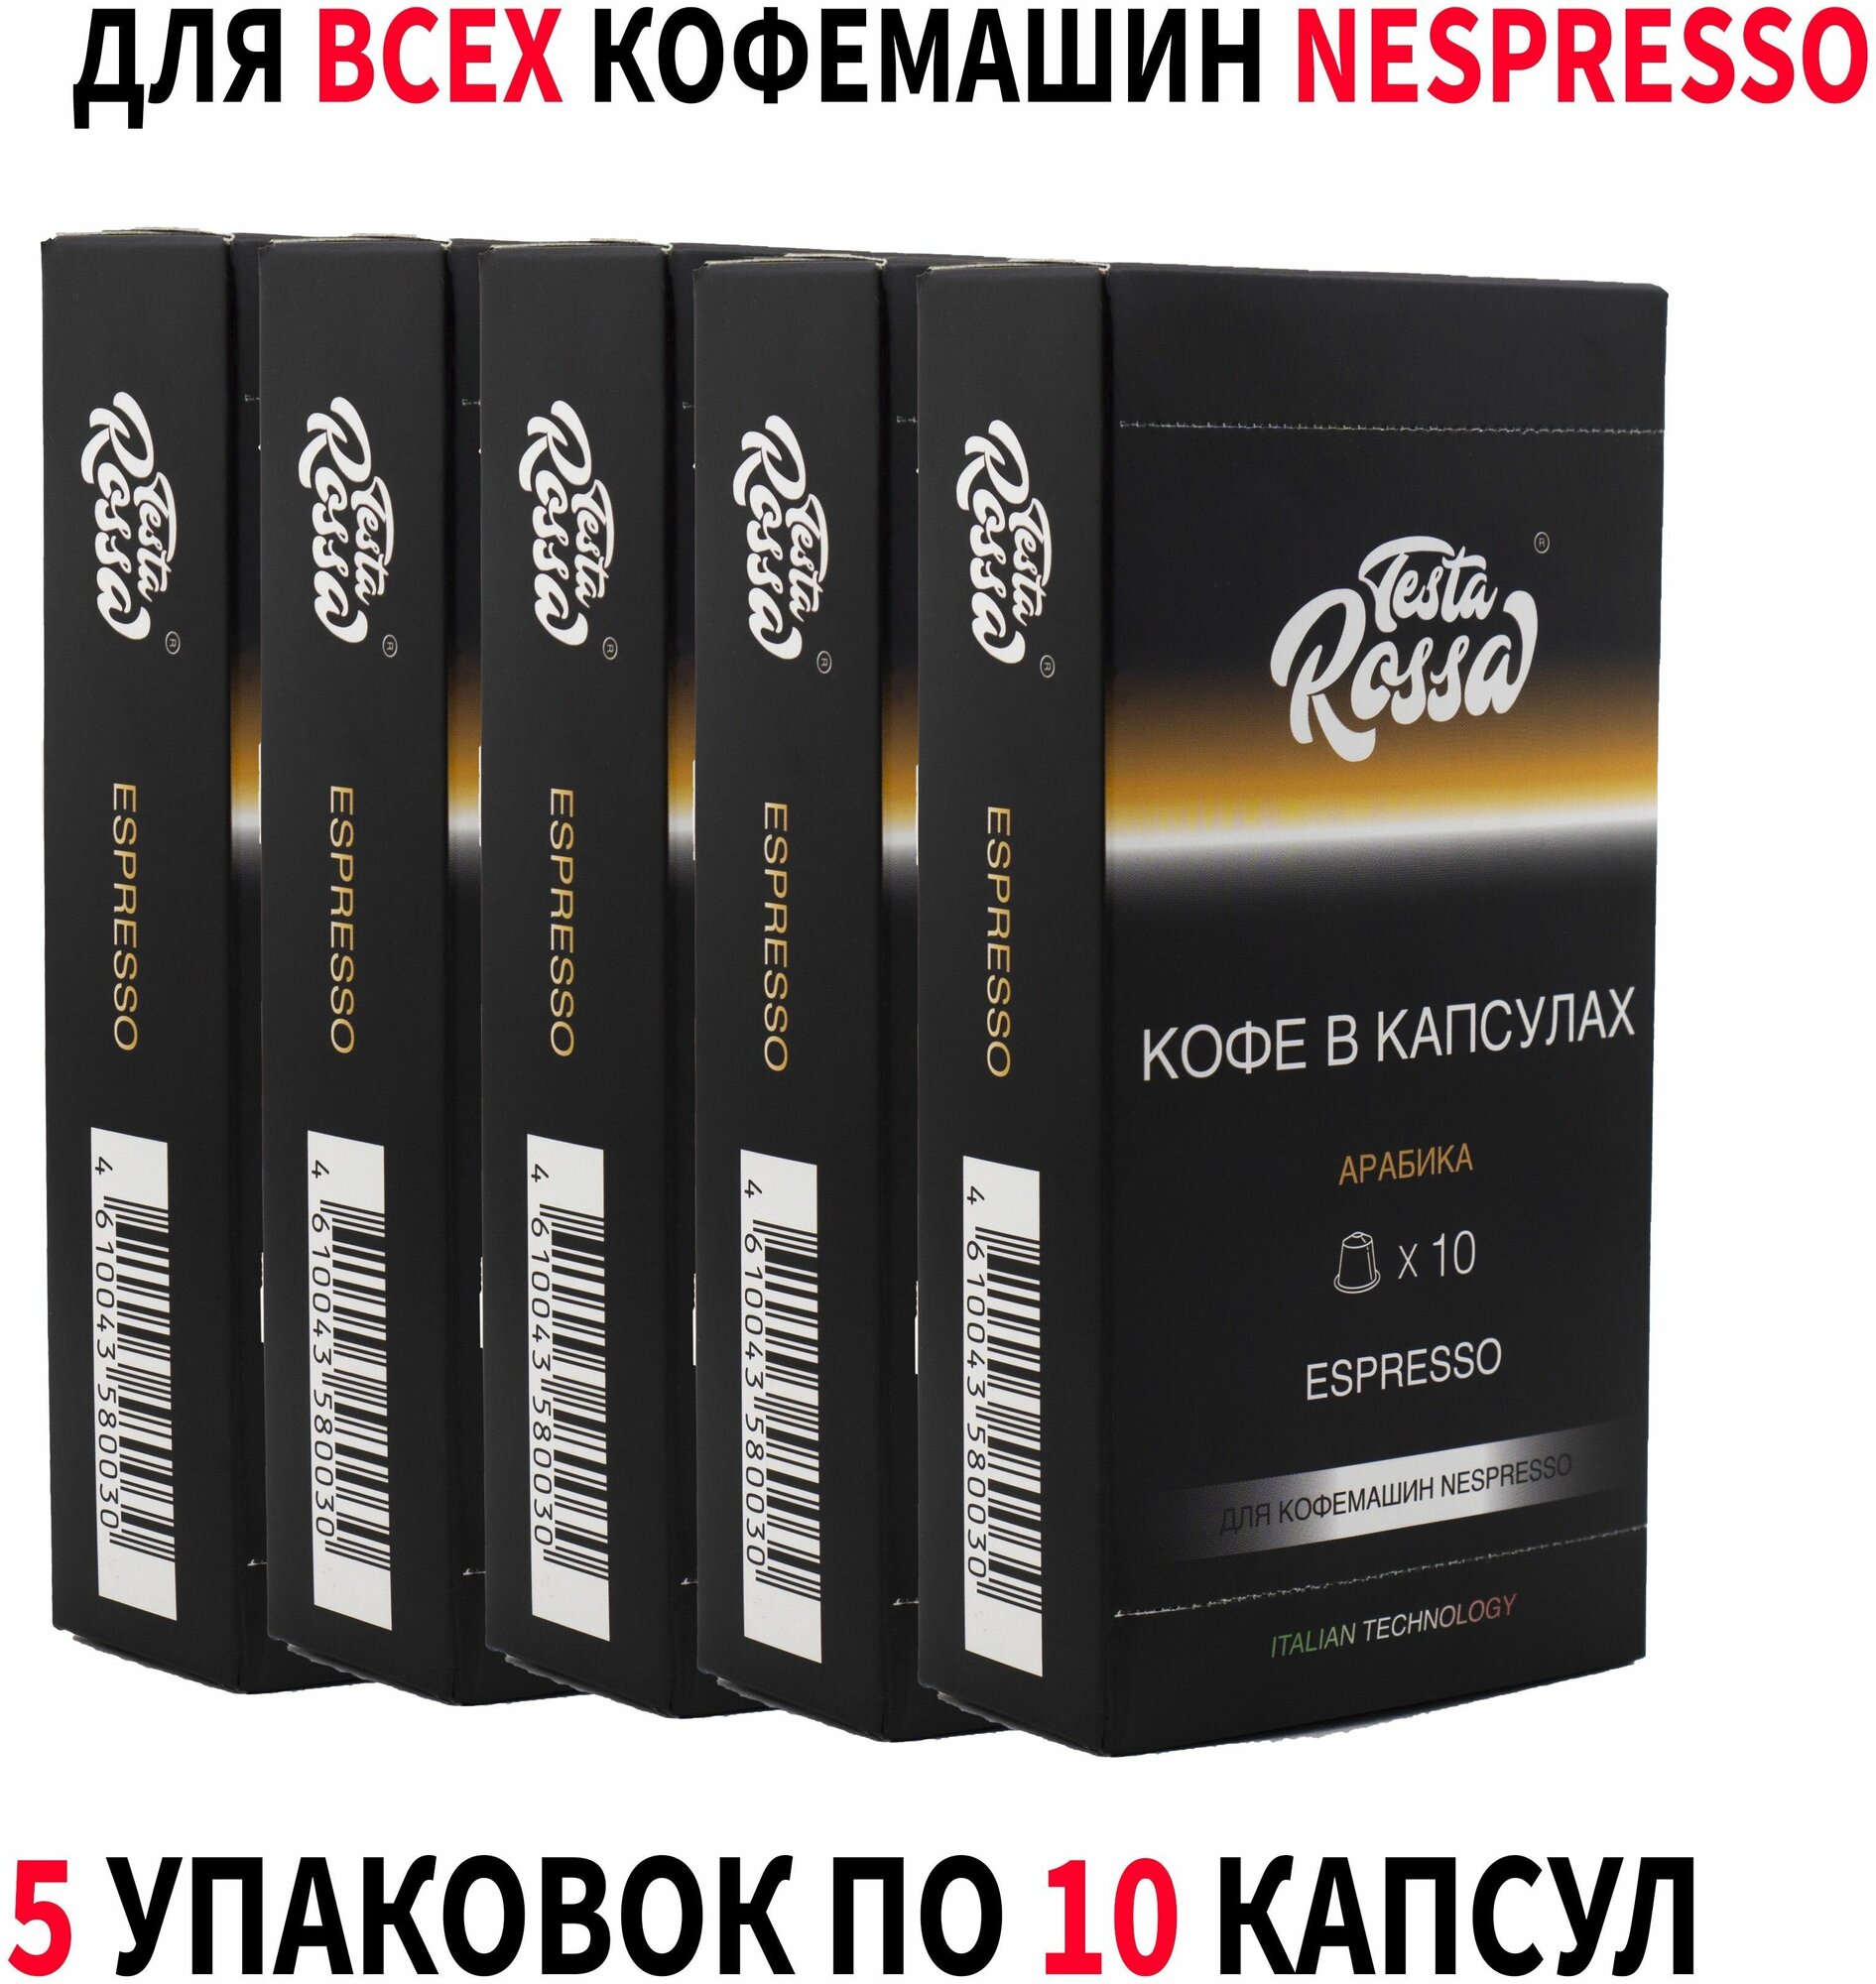 Кофе в капсулах Testa Rossa ESPRESSO, для кофемашин формата NESPRESSO, 50 порций (50 штук) - фотография № 1